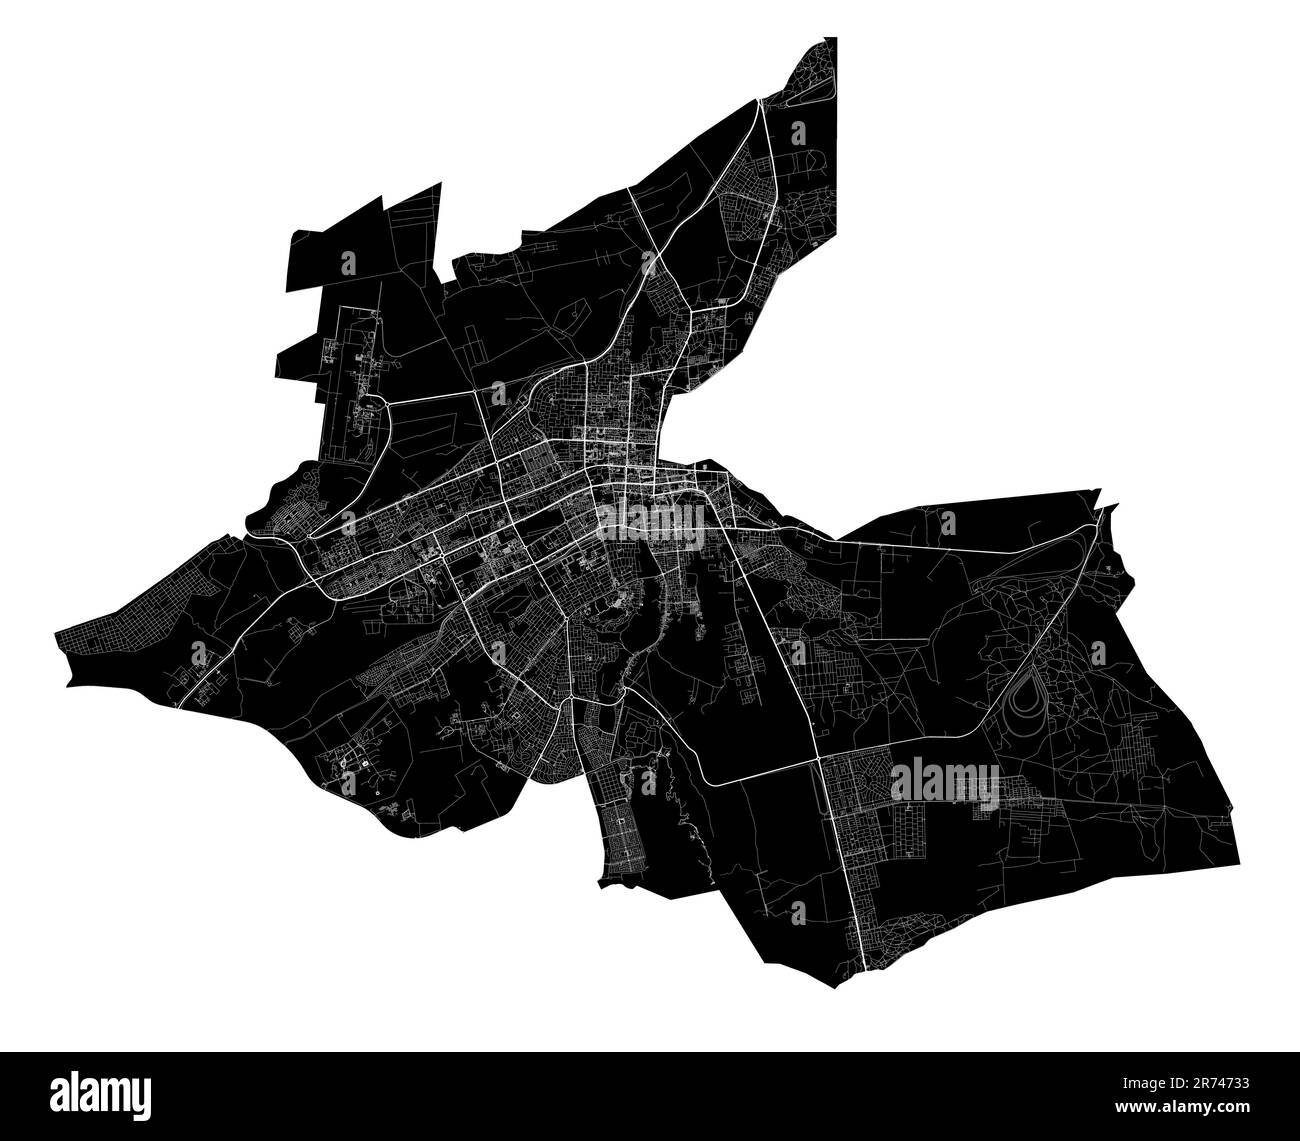 Al-Ain-Vektorkarte. Detaillierte schwarze Karte der Stadtverwaltung von Al Ain. Stadtbild-Poster mit Blick auf die Metropolitane Aria. Schwarzes Land mit weißen Straßen, Straße Stock Vektor